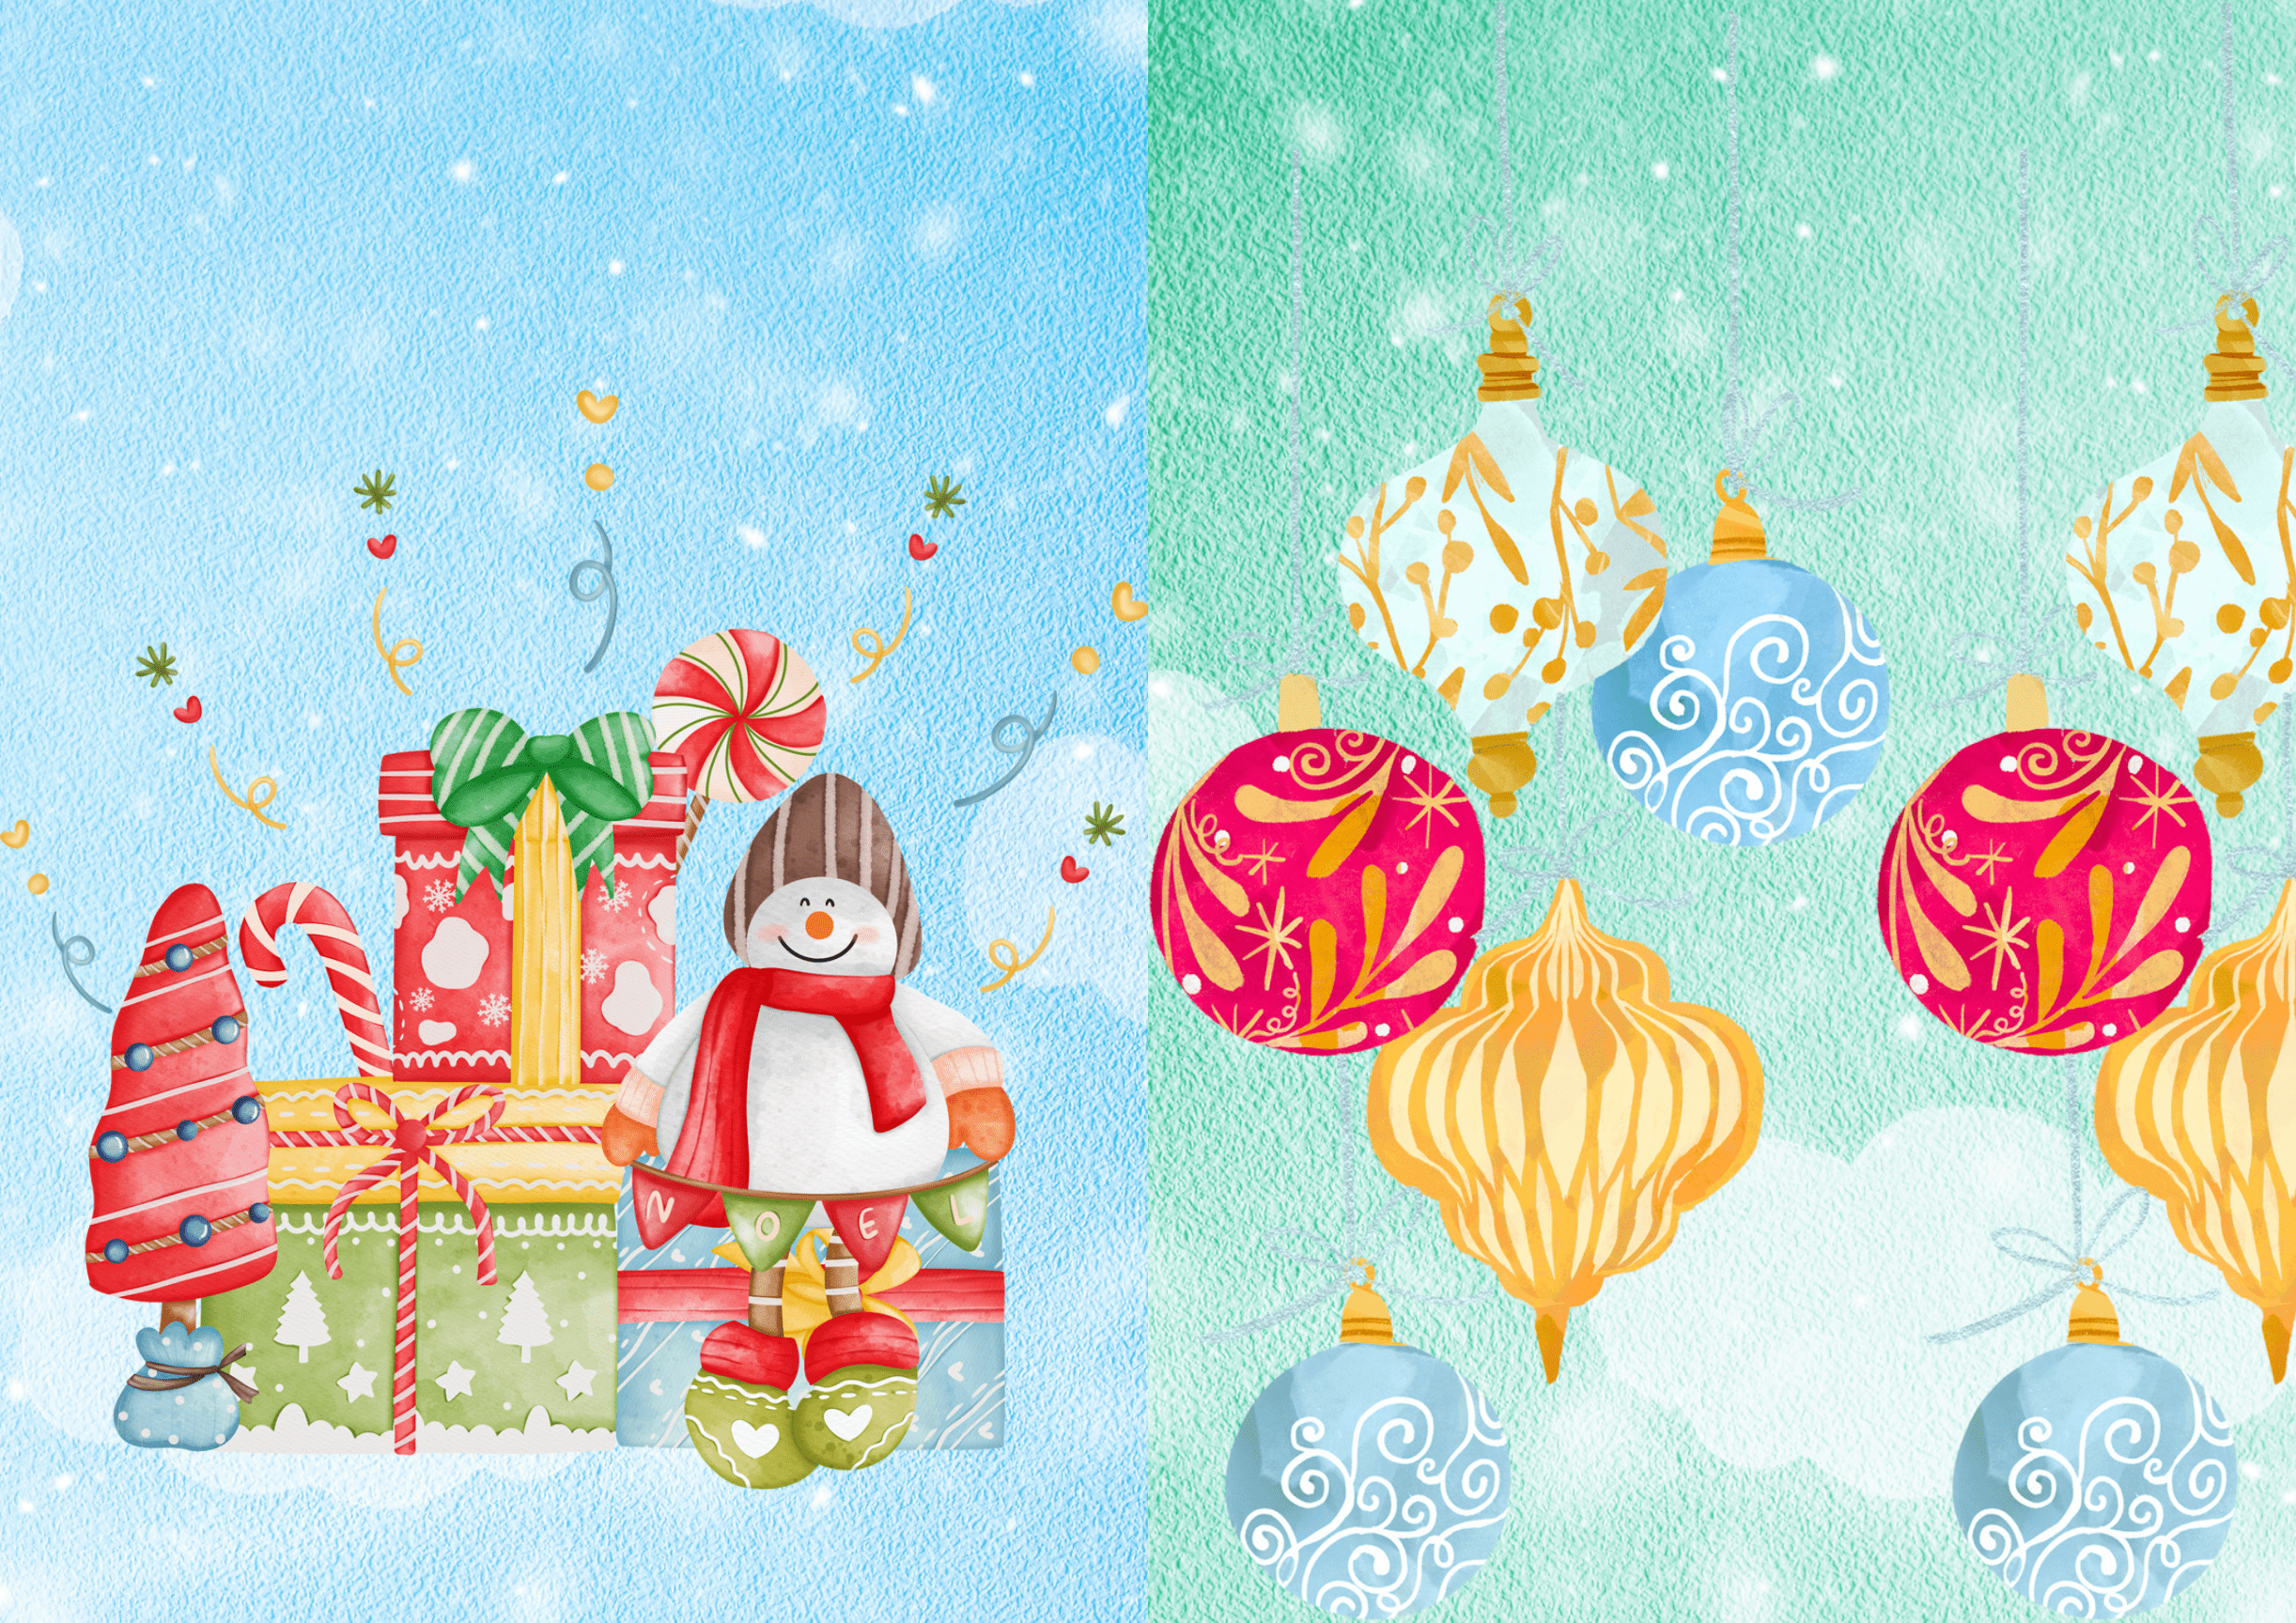 20 A3 plakater med juletema og merkedager i desember / pynt / dekor